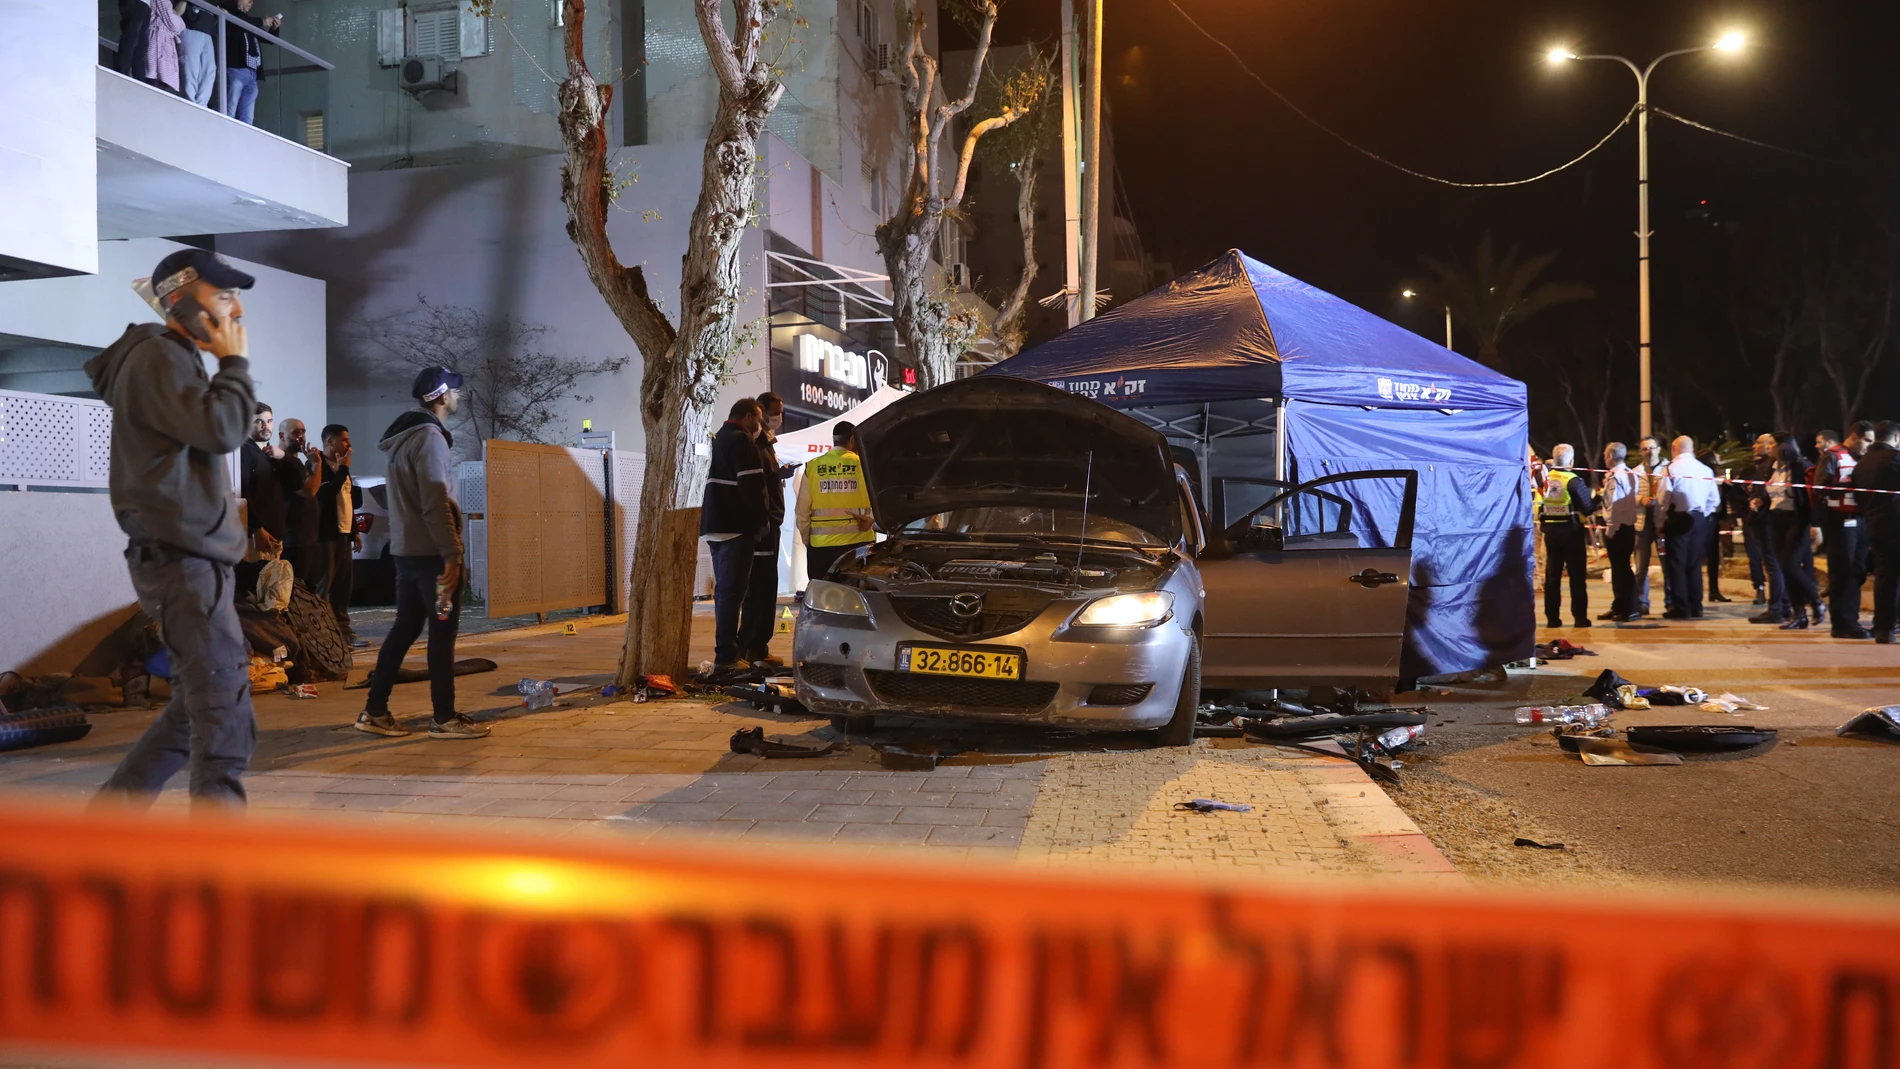 Policía israelí en el lugar de un atentado en la ciudad de Hadera, Israel, 27 de marzo de 2022. Al menos dos policías muertos y varias personas heridas de gravedad en un tiroteo por dos pistoleros palestinos, que fueron asesinados a tiros por miembros de una unidad de agentes encubiertos. (Atentado) EFE/EPA/ABIR SULTAN